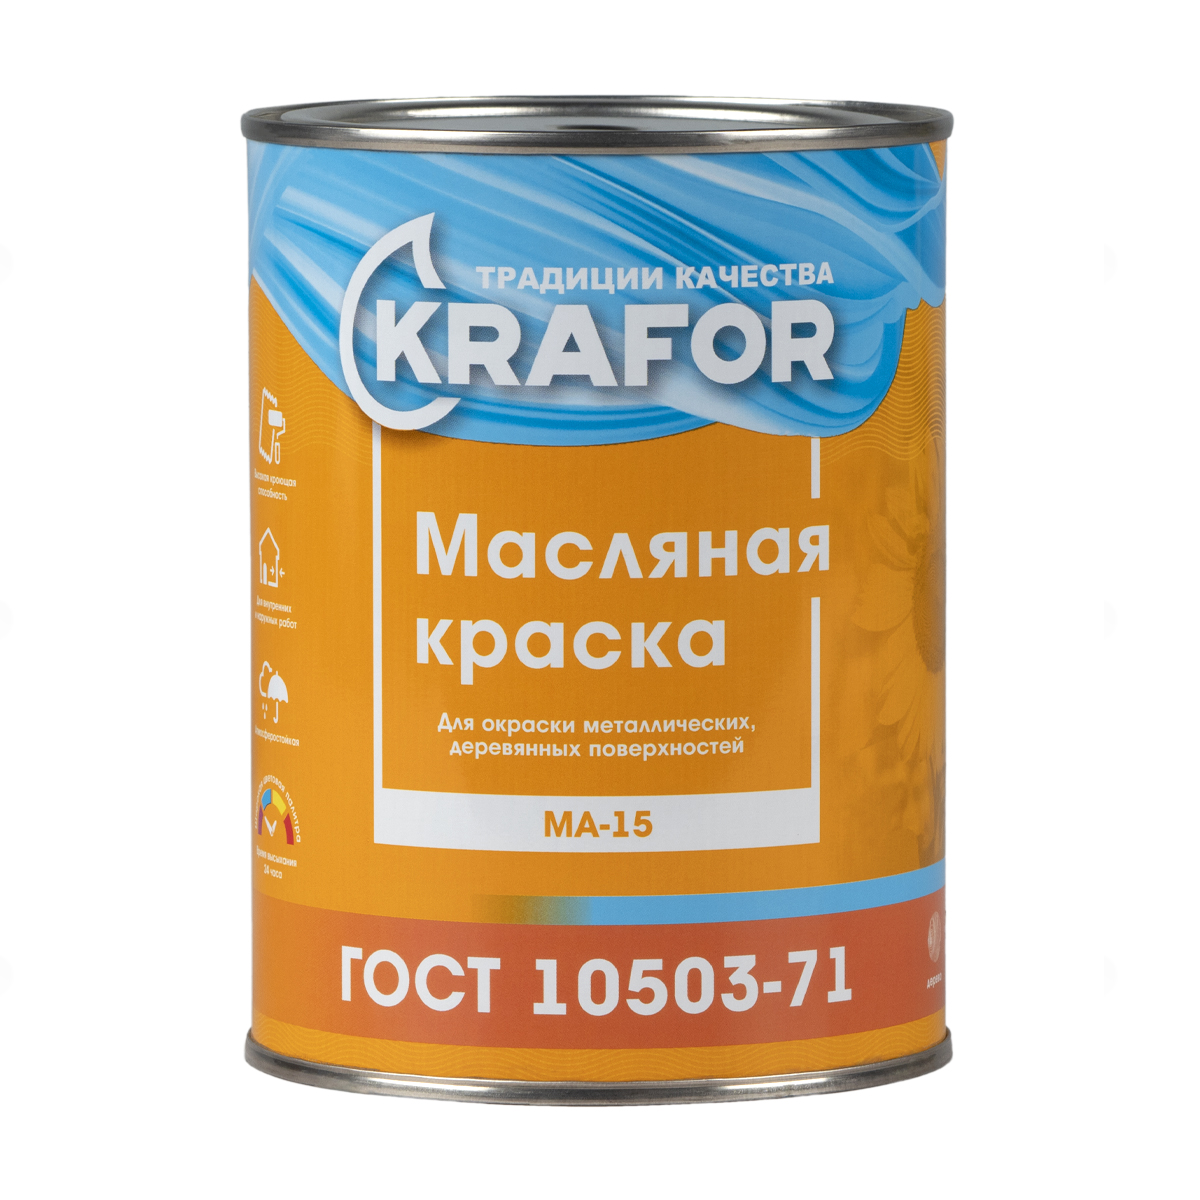 Краска ма-15 салатовая  0,9 кг (1/14) "krafor"